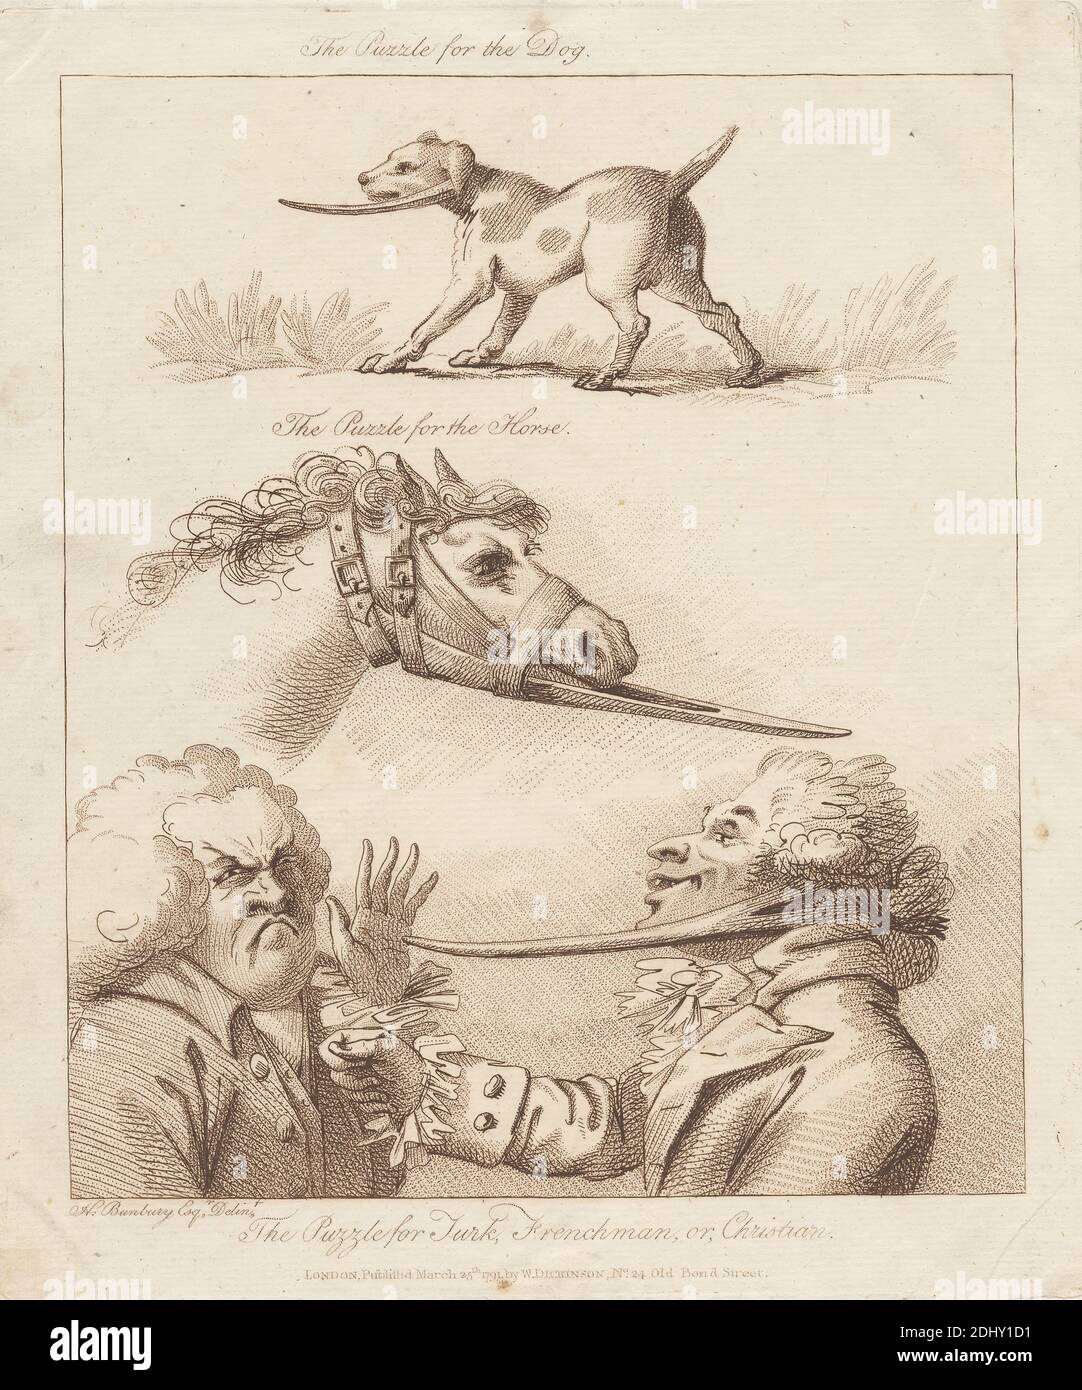 The Puzzle for the Dog, The Puzzle for the Horse, The Puzzle for Turk, Frenchman, OR, Christian, William Dickinson, 1746–1823, British, After Henry William Bunbury, 1750–1811, British, Published by William Dickinson, 1746–1823, British, 1791, incisione e incisione su carta leggermente testurizzata, beige, foglio: 10 1/2 x 8 13/16 pollici (26.6 x 22.4 cm) e immagine: 8 3/4 x 7 1/2 pollici (22.3 x 19 cm), arte animale, caricatura, costume, gamberi, polsini, cane (animale), gesturing, cavallo (animale), lapelli, uomini, naso, satira, sorpresa, parrucche Foto Stock